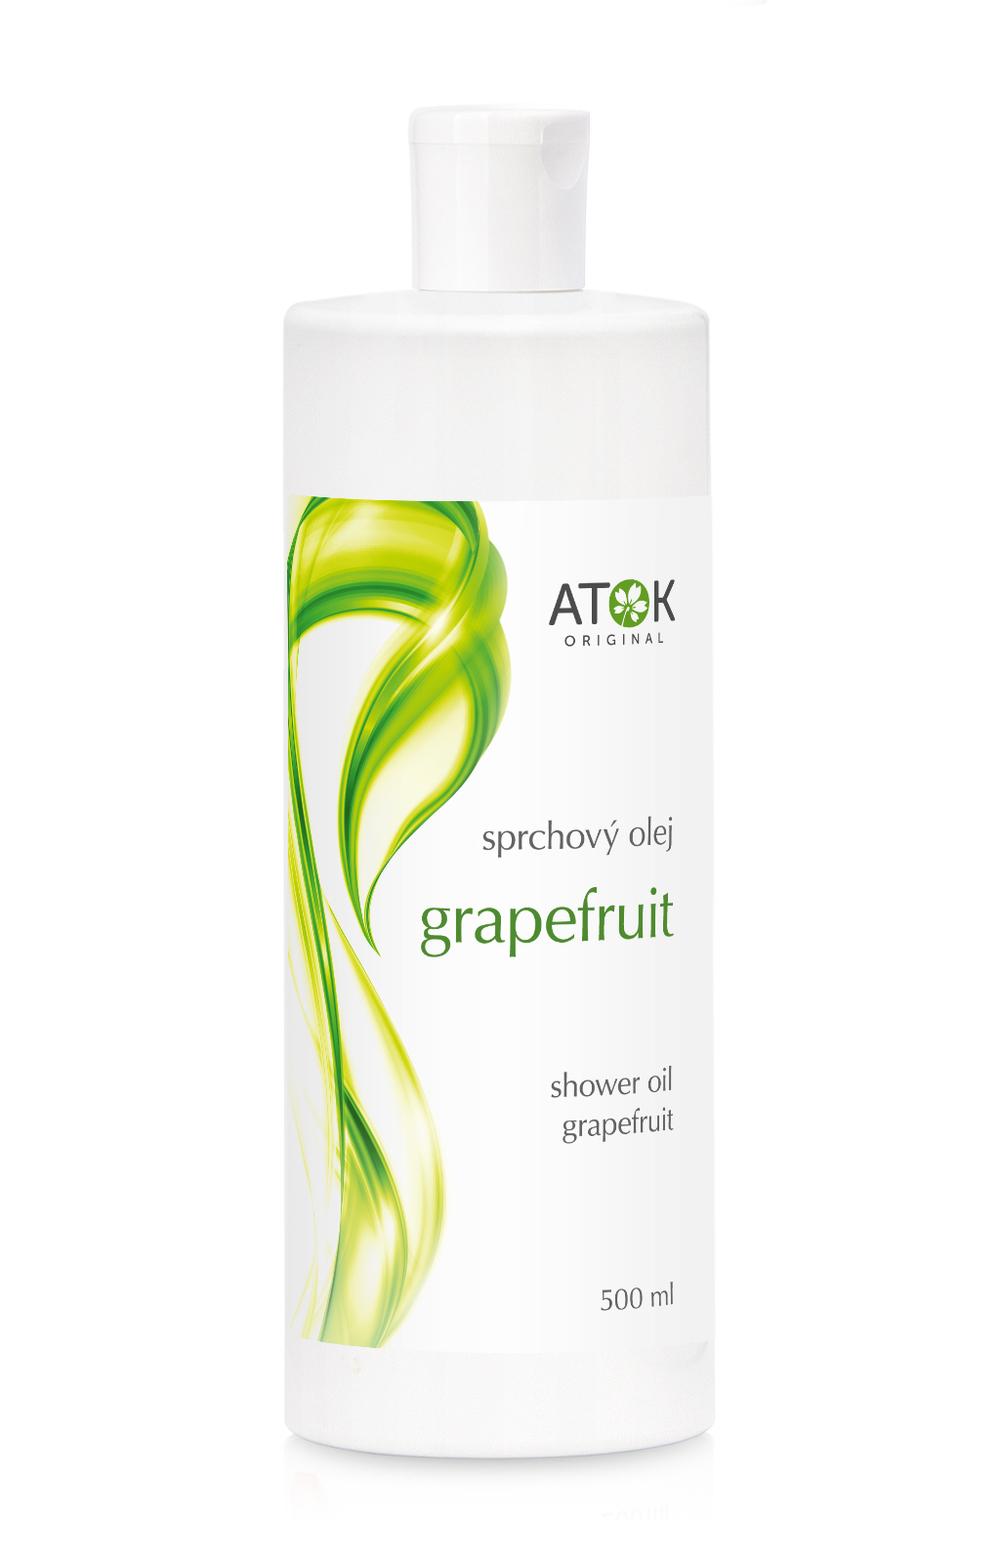 Sprchový olej Grapefruit - Original ATOK Obsah: 500 ml